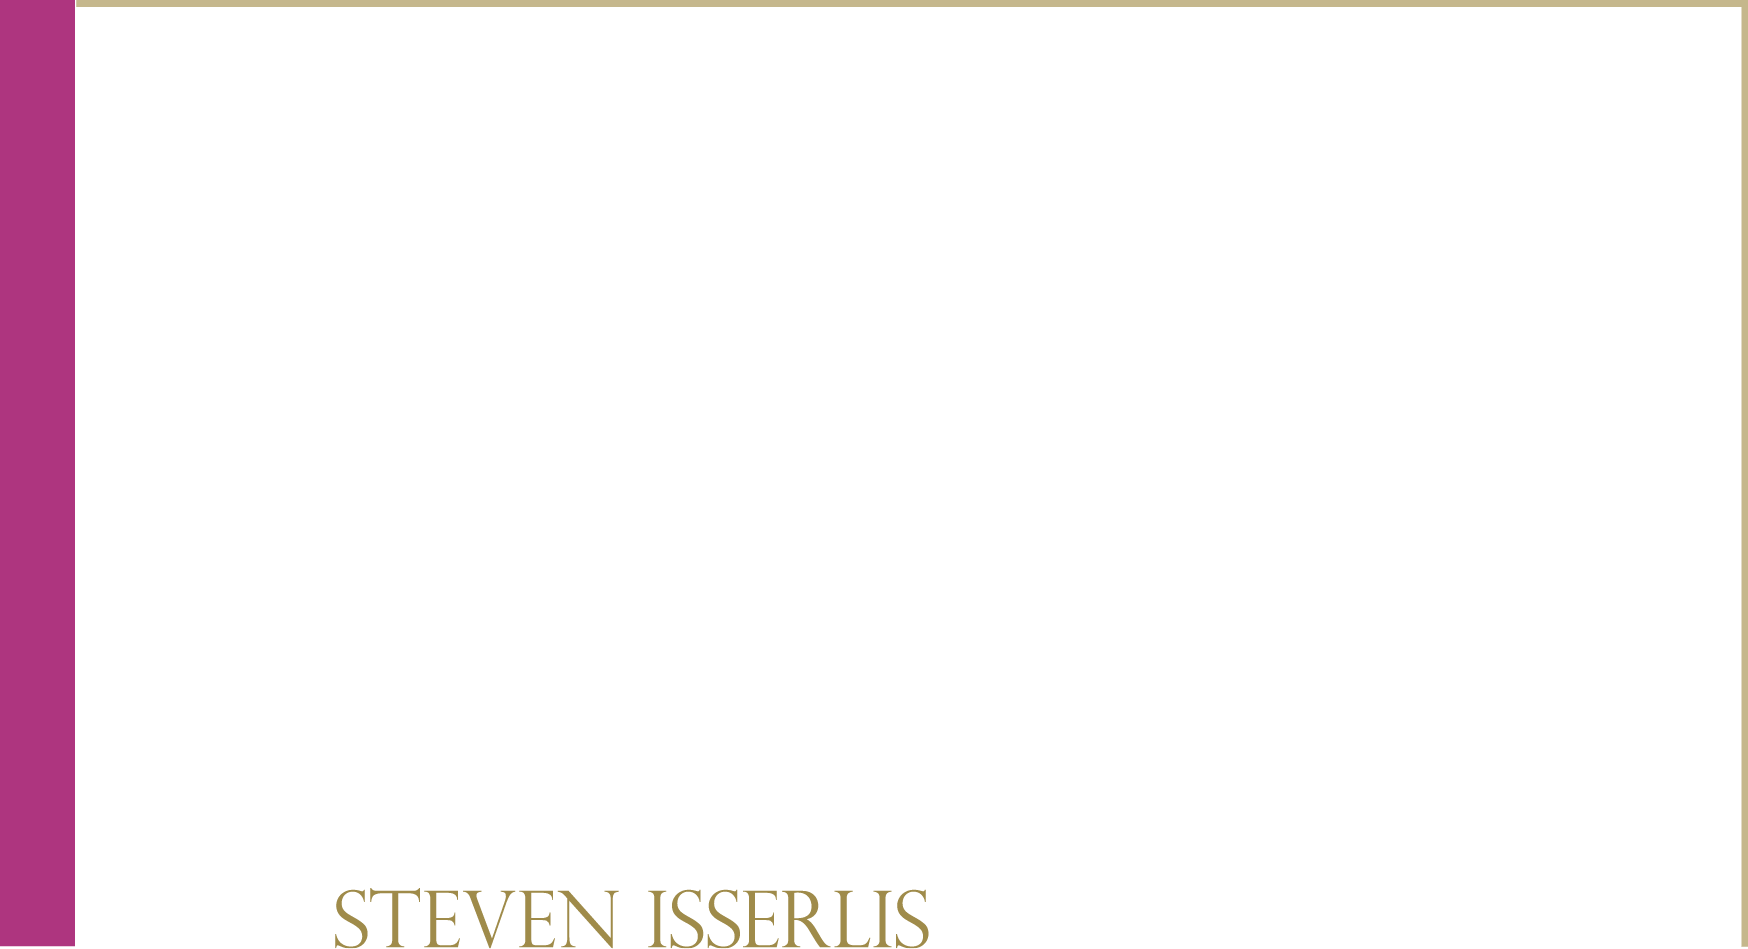 Vol.3 Steven Isserlis